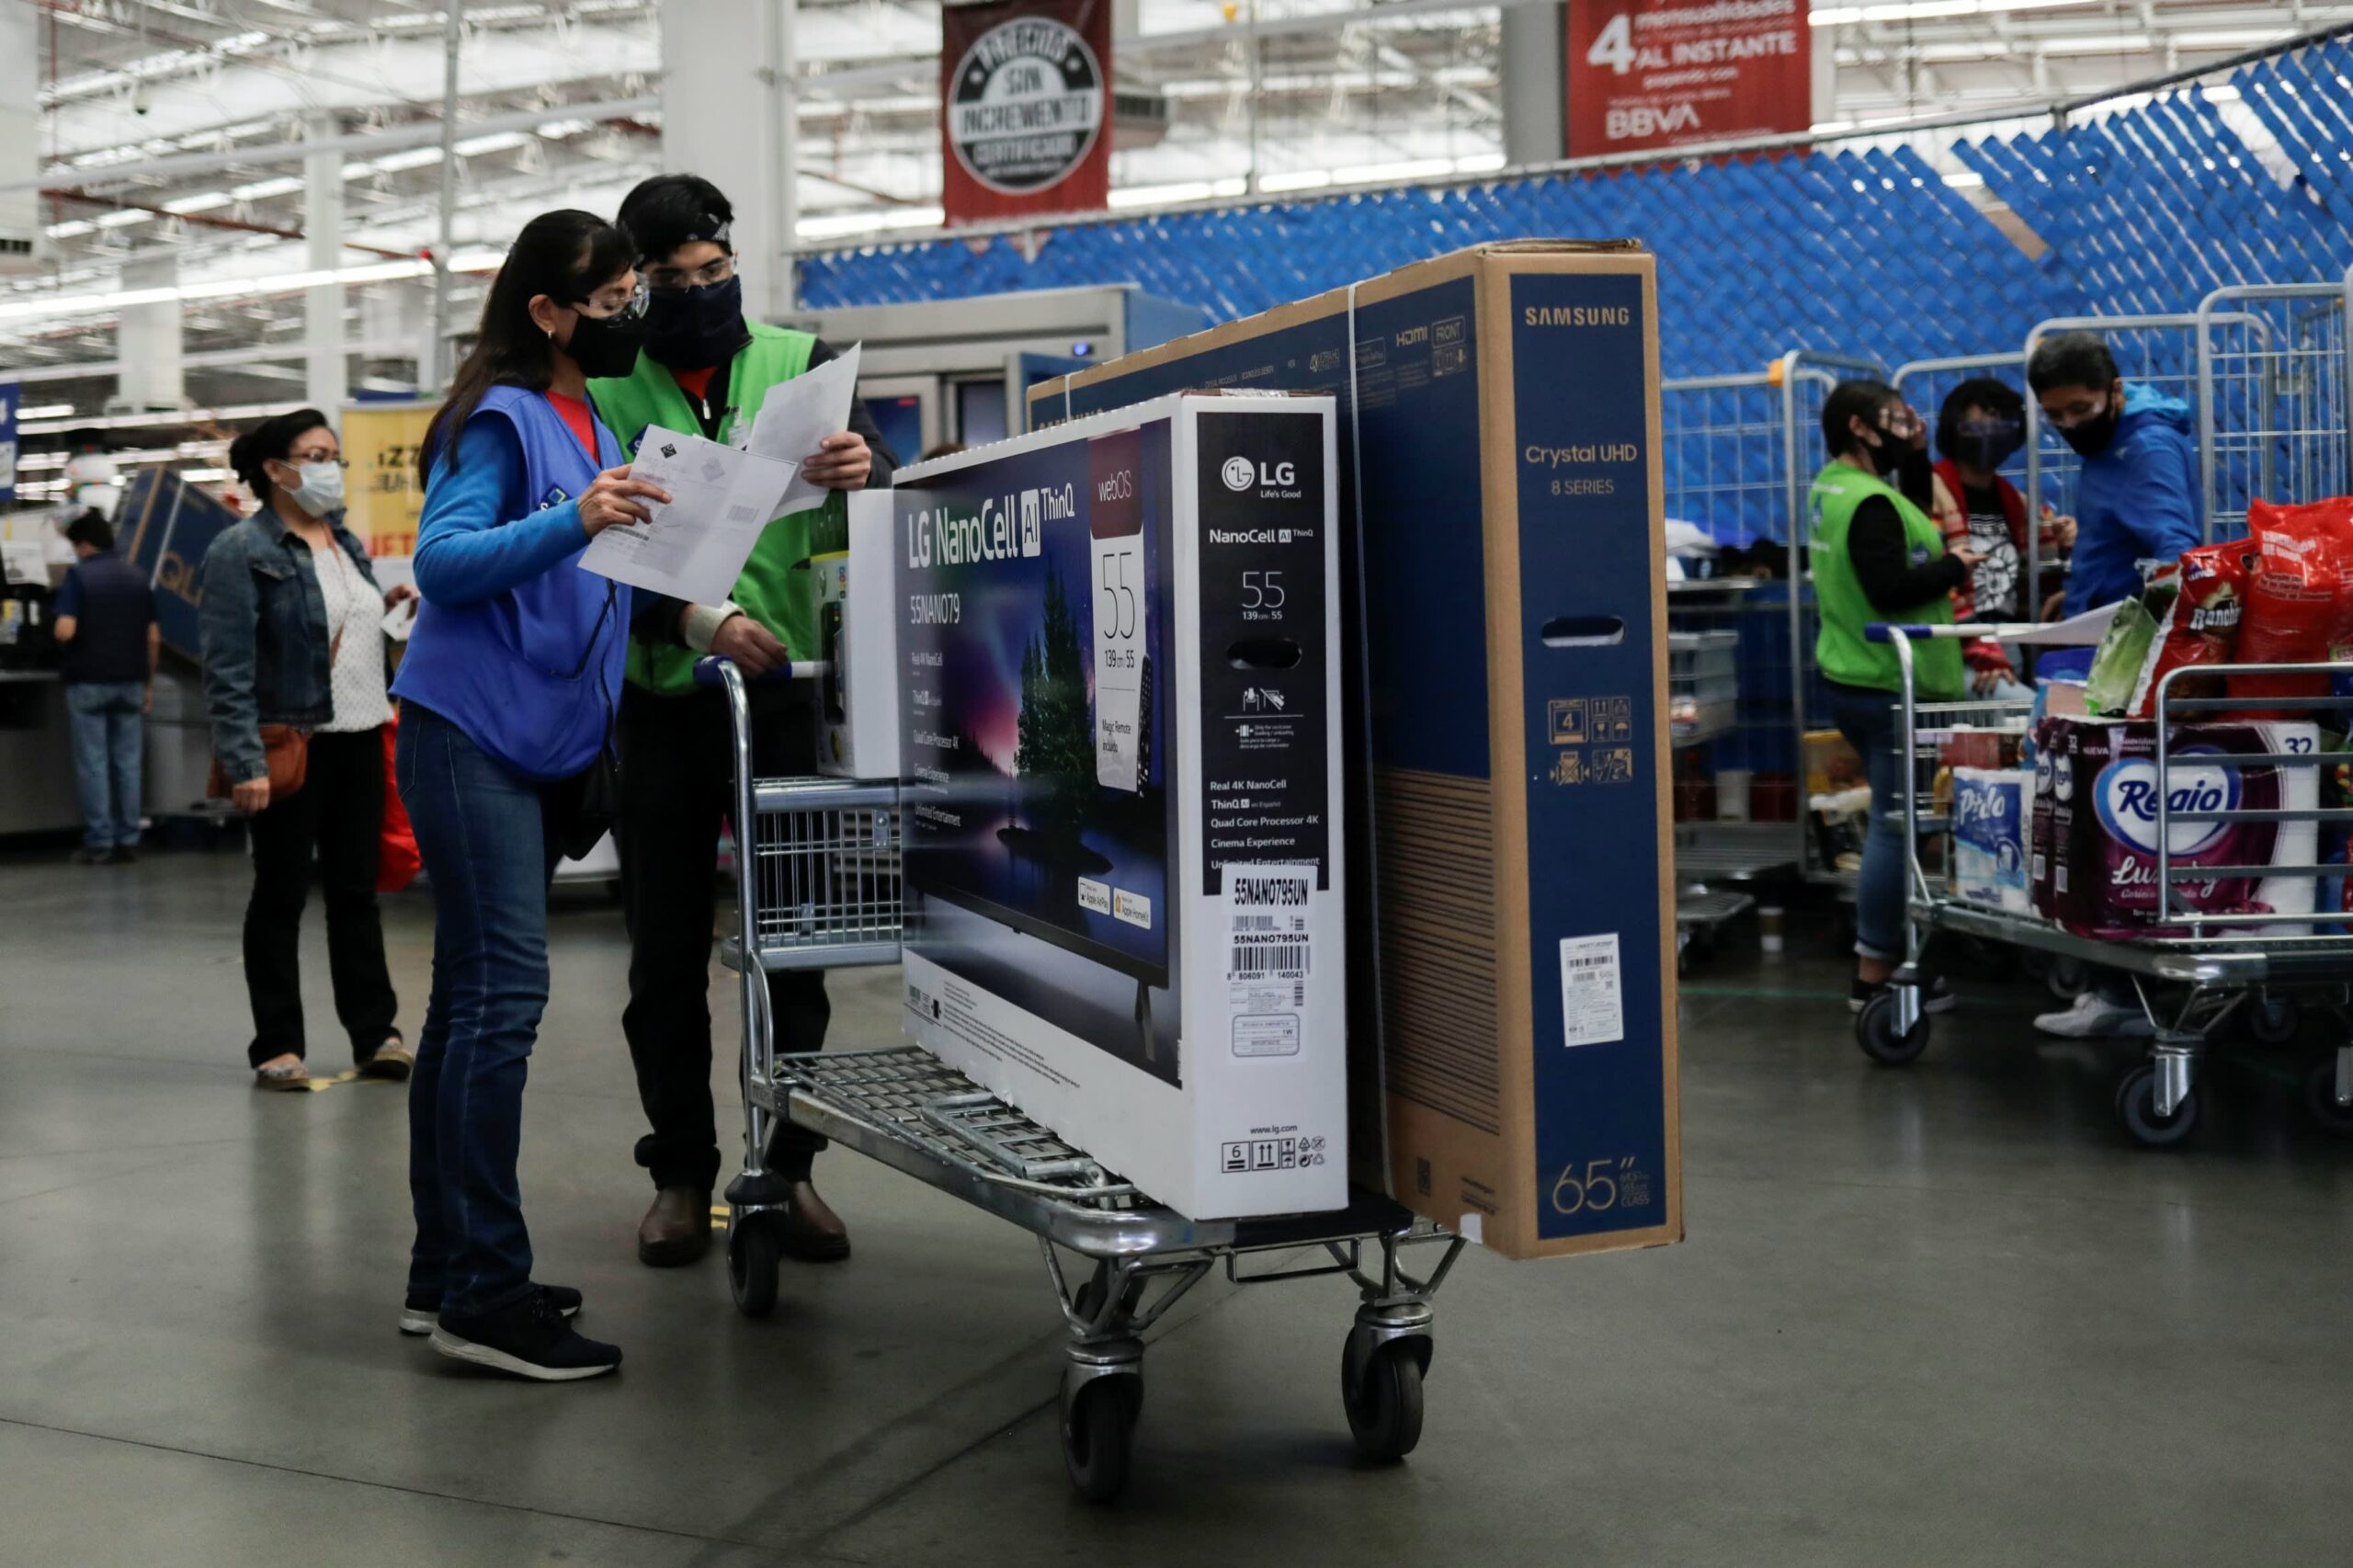 Walmart’s Sam’s Club raises minimum wage to $15 amid tight labor market